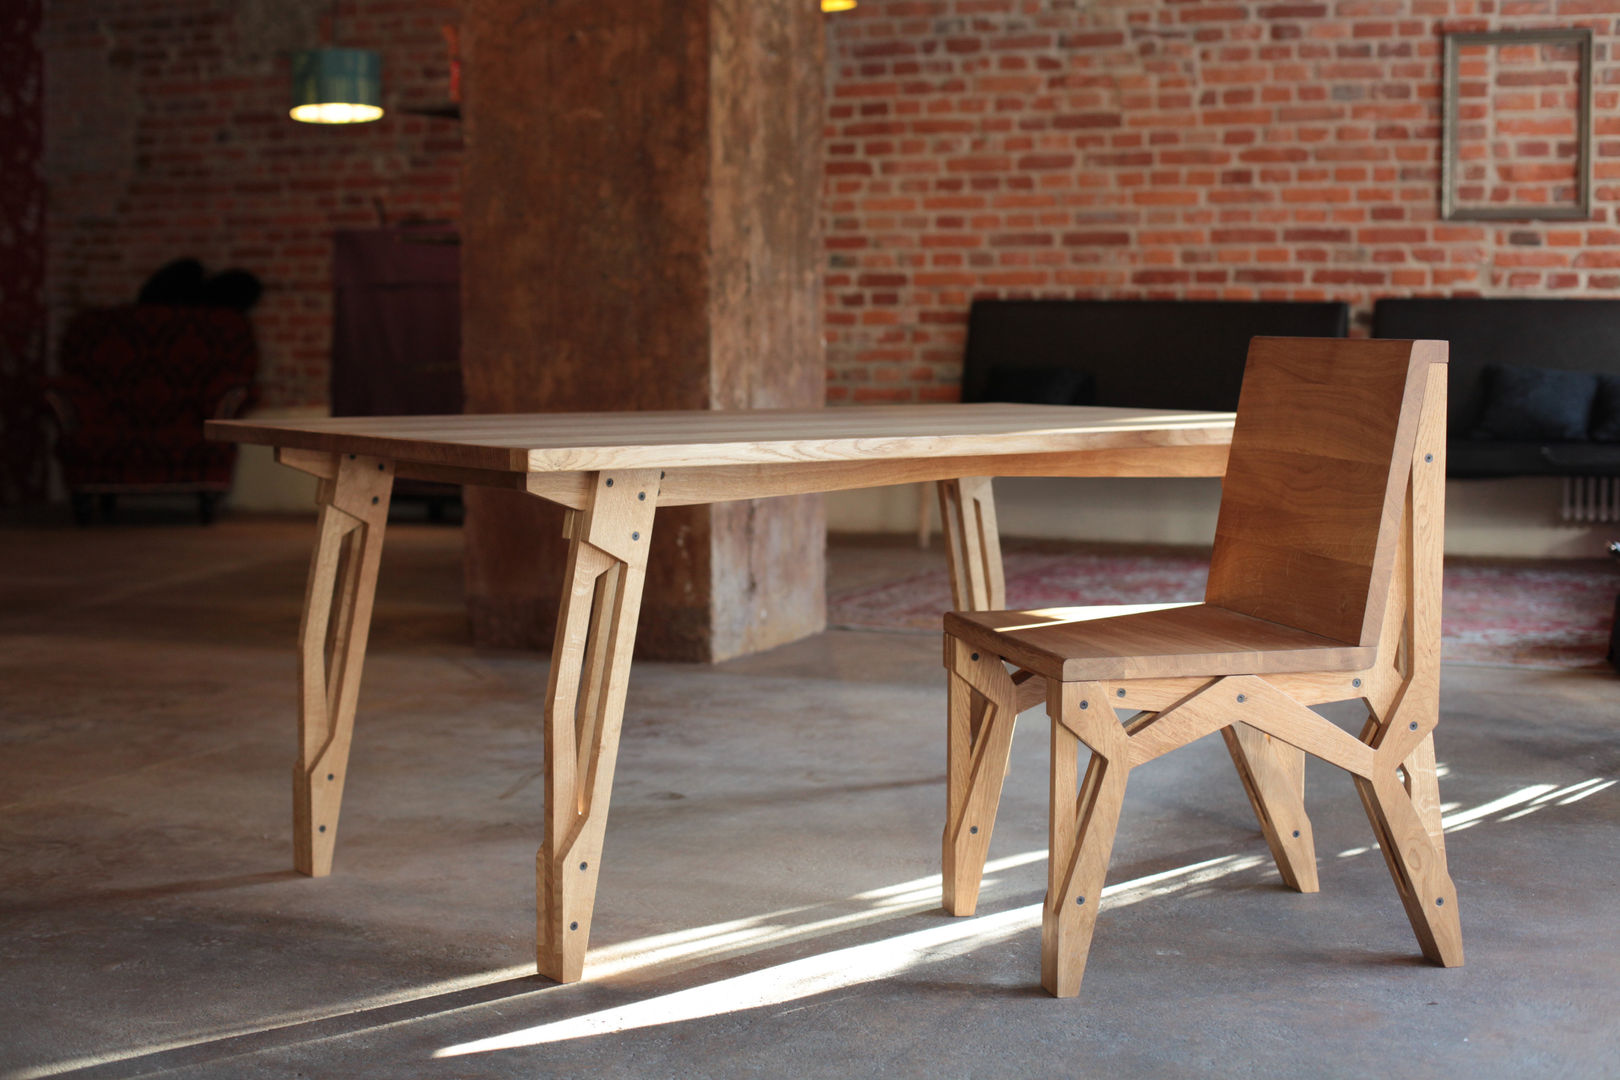 RIG CHAIR ROARHIDE Industrial designs Industriale Esszimmer Stühle und Bänke